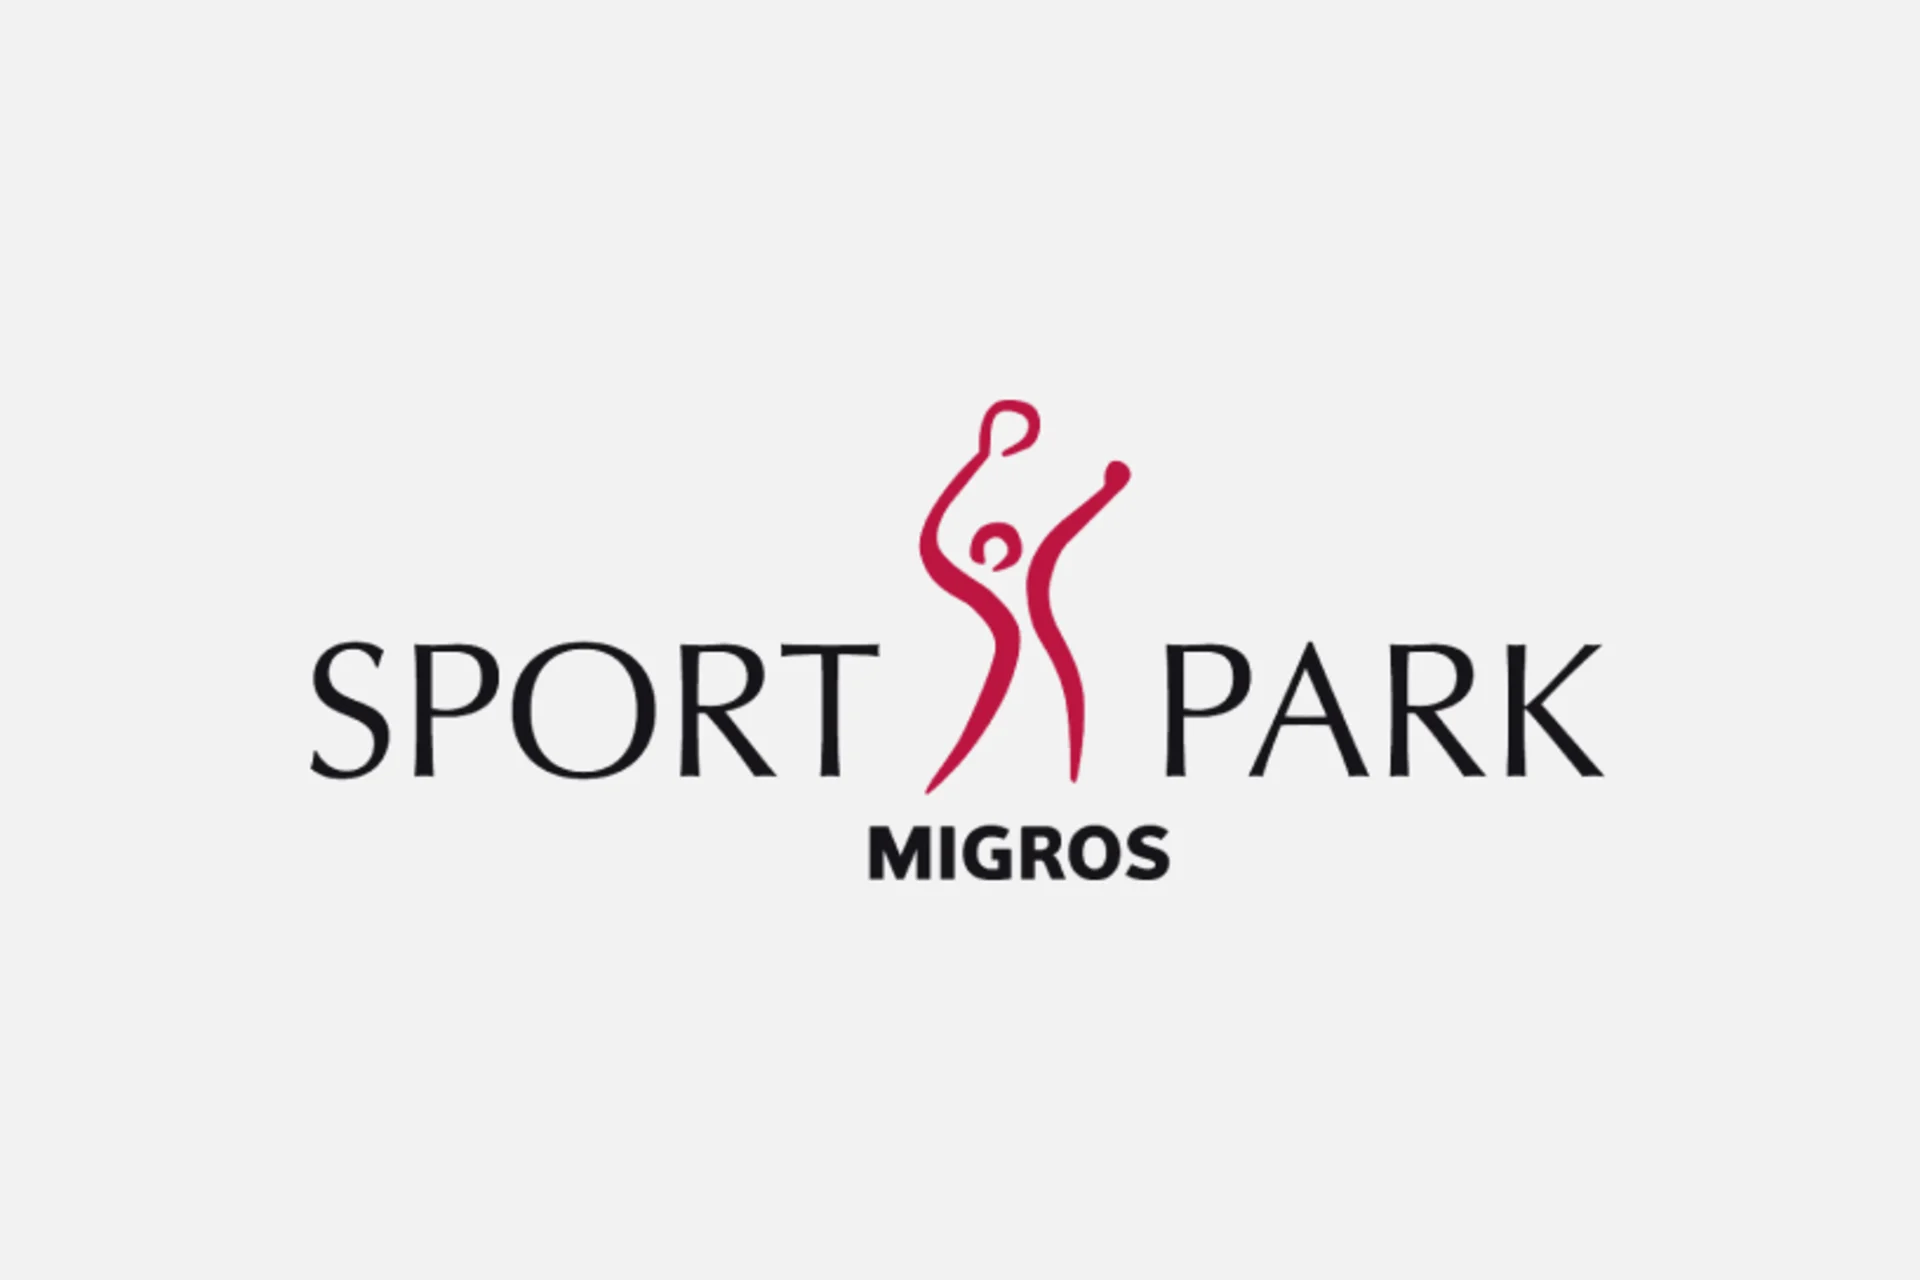 Migros Sportpark logo